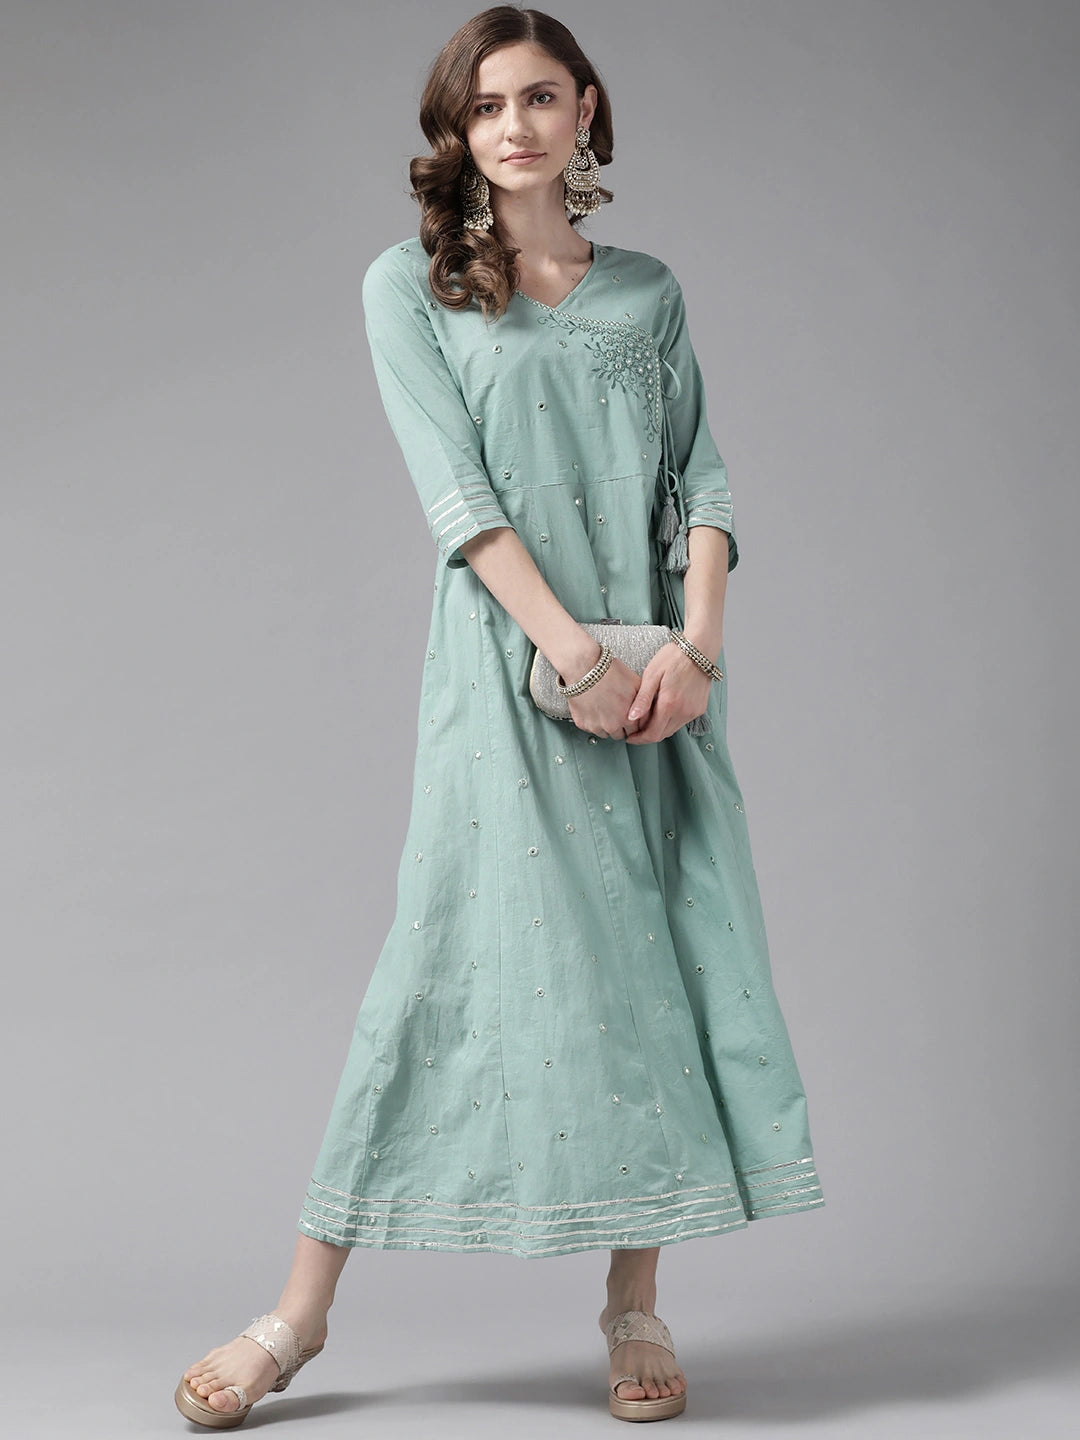 Sea Green Floral Dress-Yufta Store-2195DRSSGM